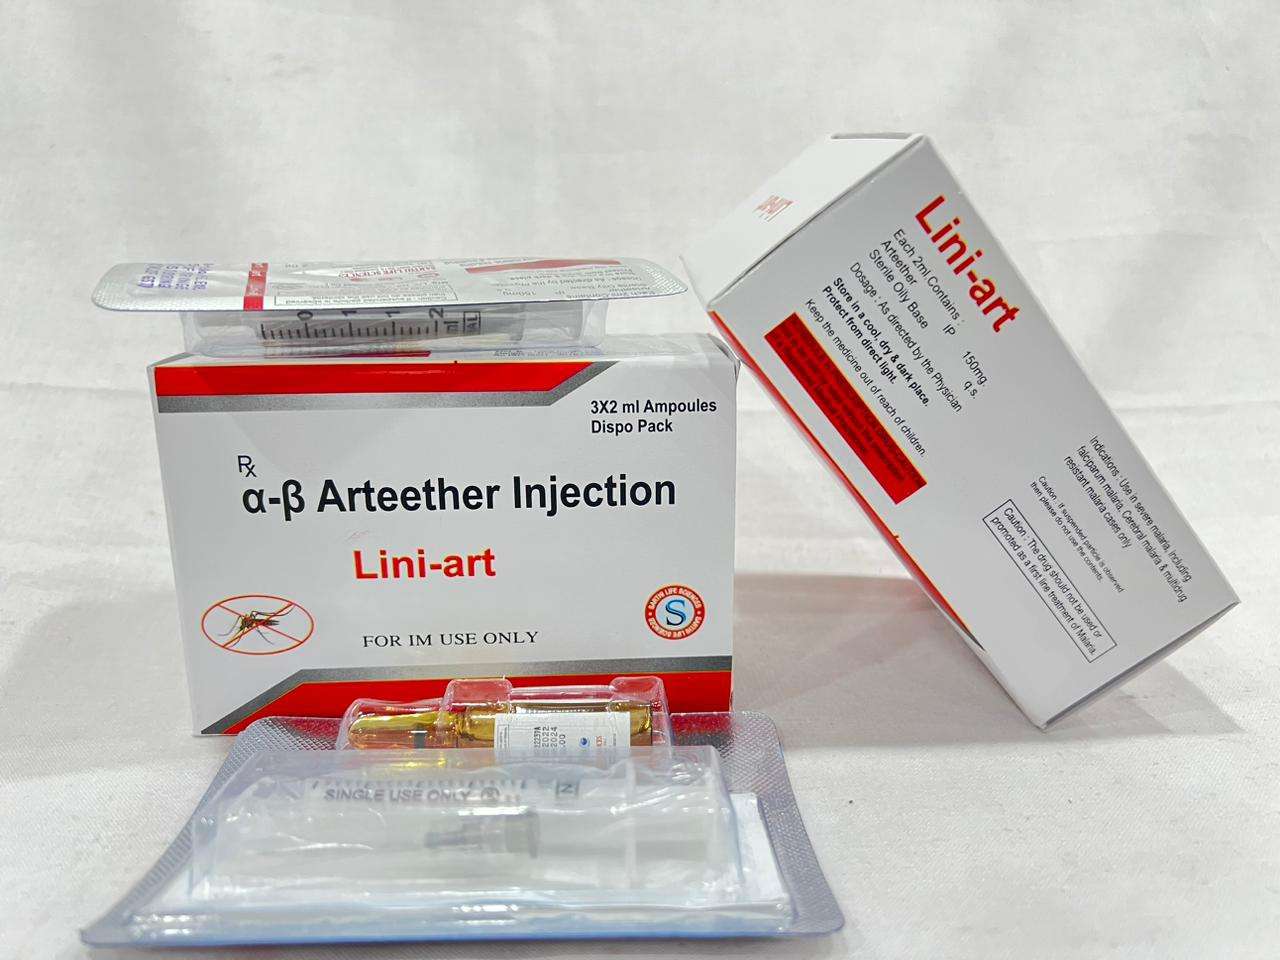 alpha-beta arteether 150 mg / 2ml